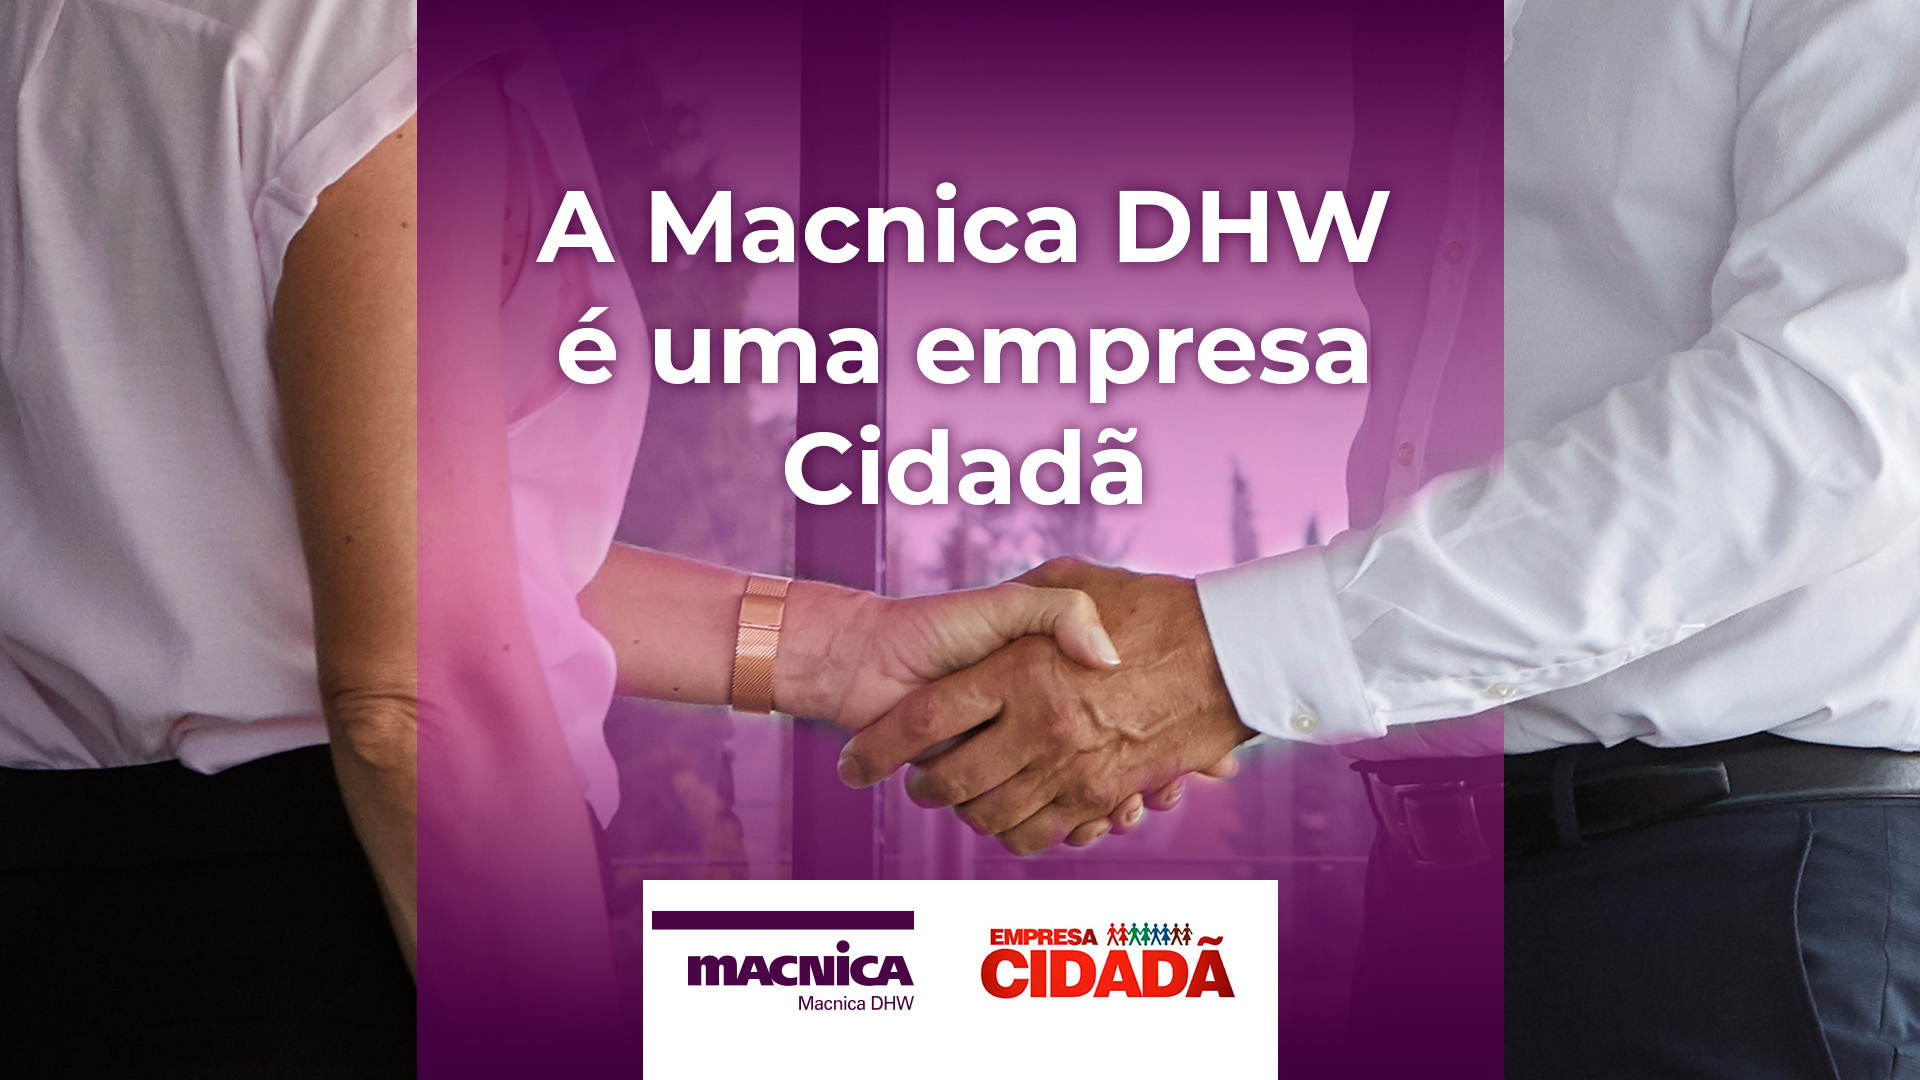 A Macnica DHW é uma empresa Cidadã